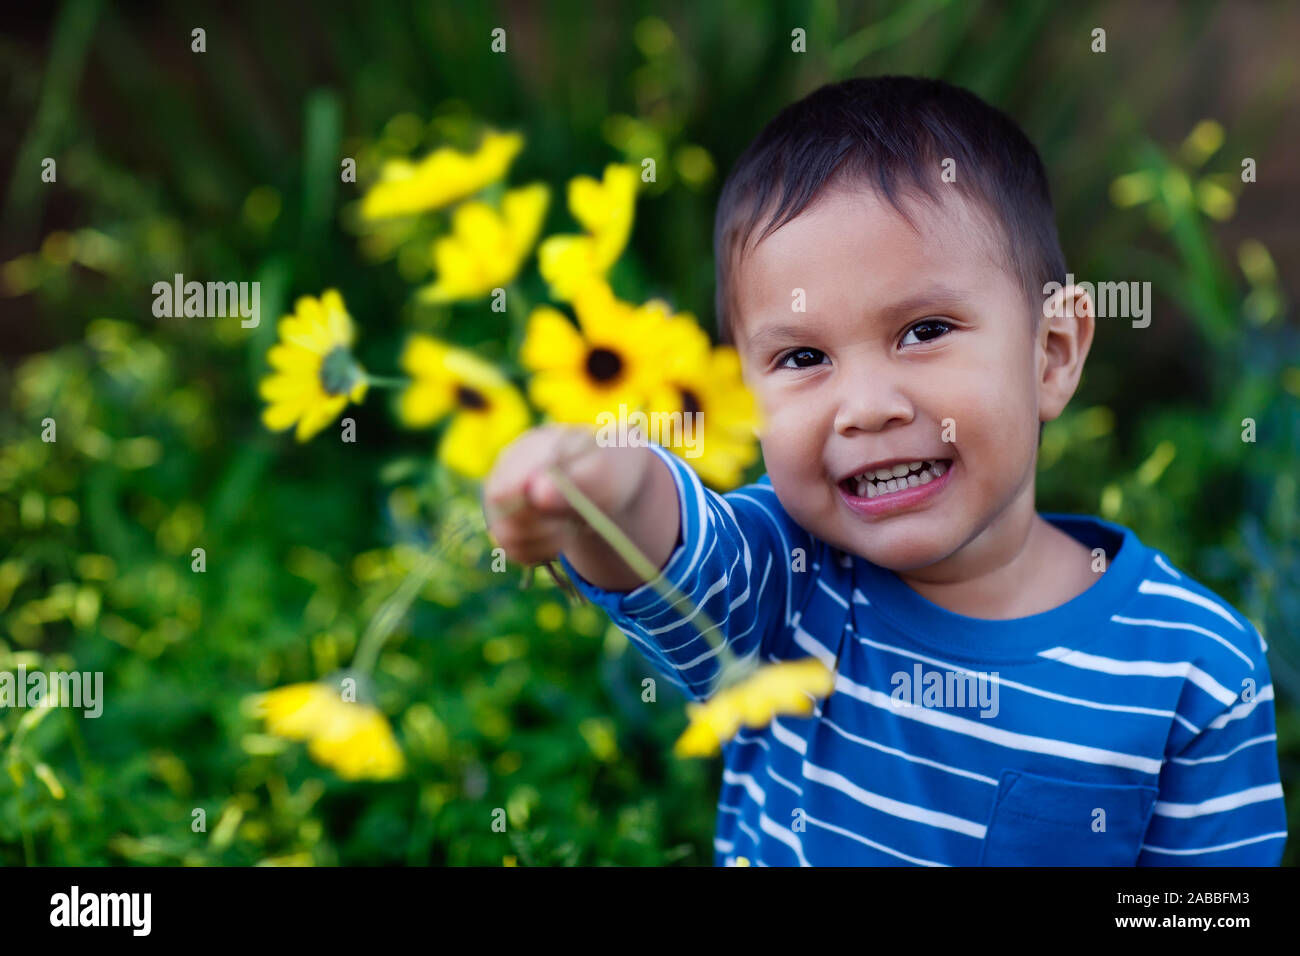 Souriante jeune fils donnant un arrangement de fleurs jaunes qu'il tient à témoigner de l'affection et l'amour. Banque D'Images